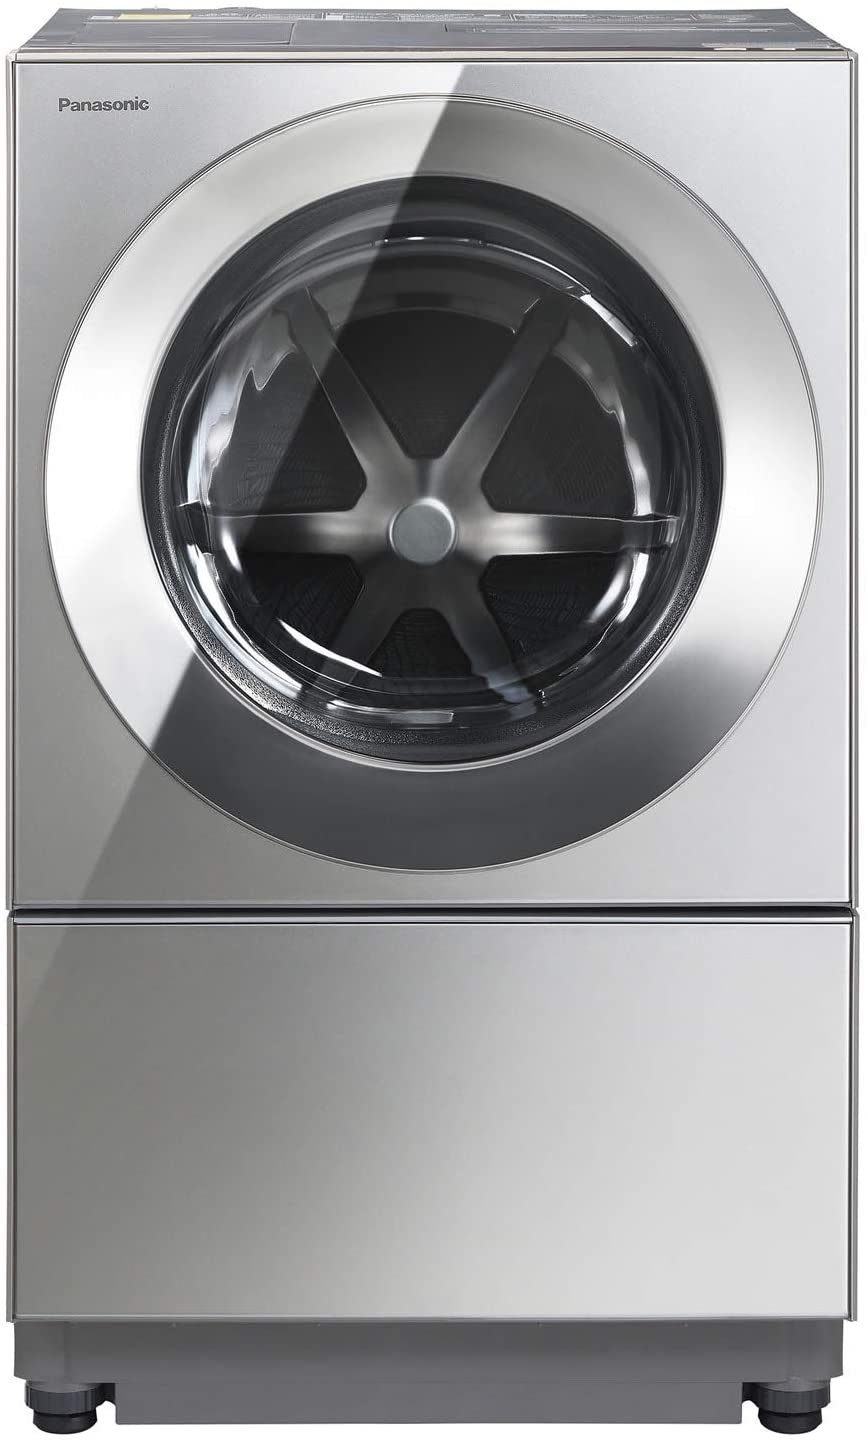 パナソニックななめドラム洗濯乾燥機Cuble(キューブル)10kg左開き液体洗剤・柔軟剤自動投入ナノイーXプレミアムステンレスNA-VG2500L-X